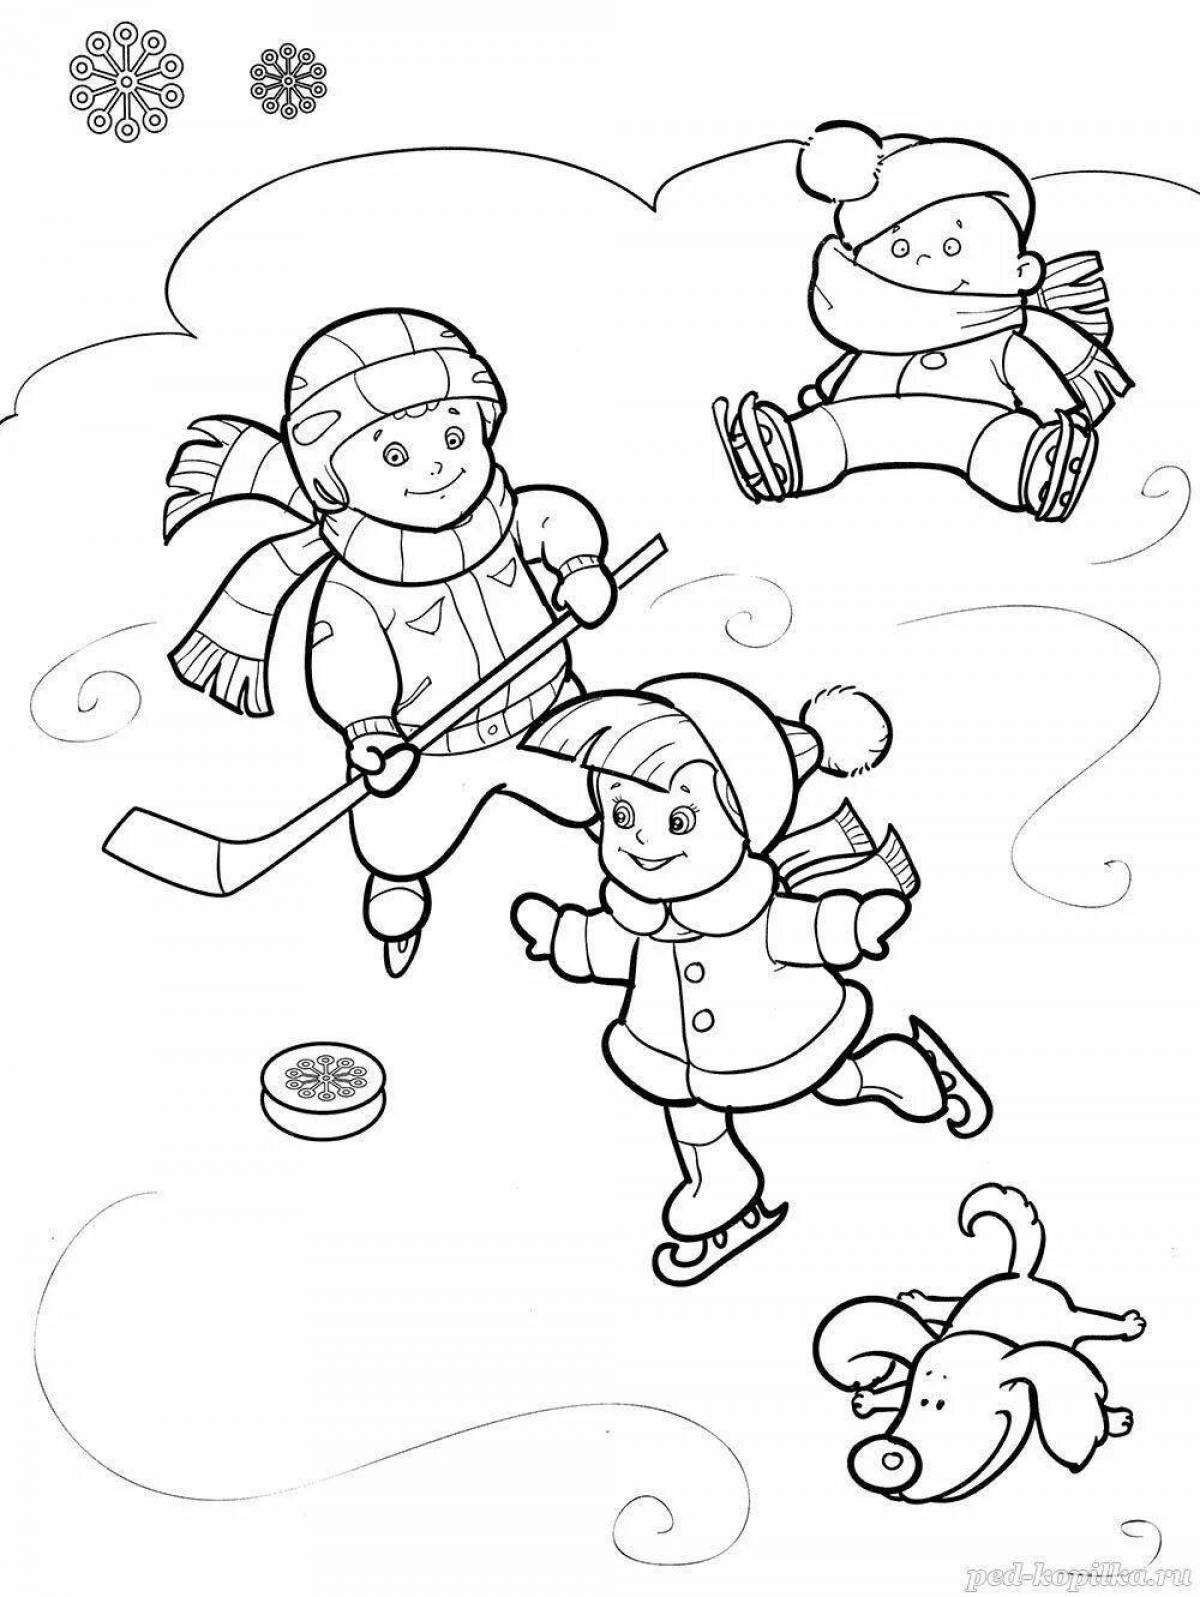 Раскраска для детей «бой в снежки»